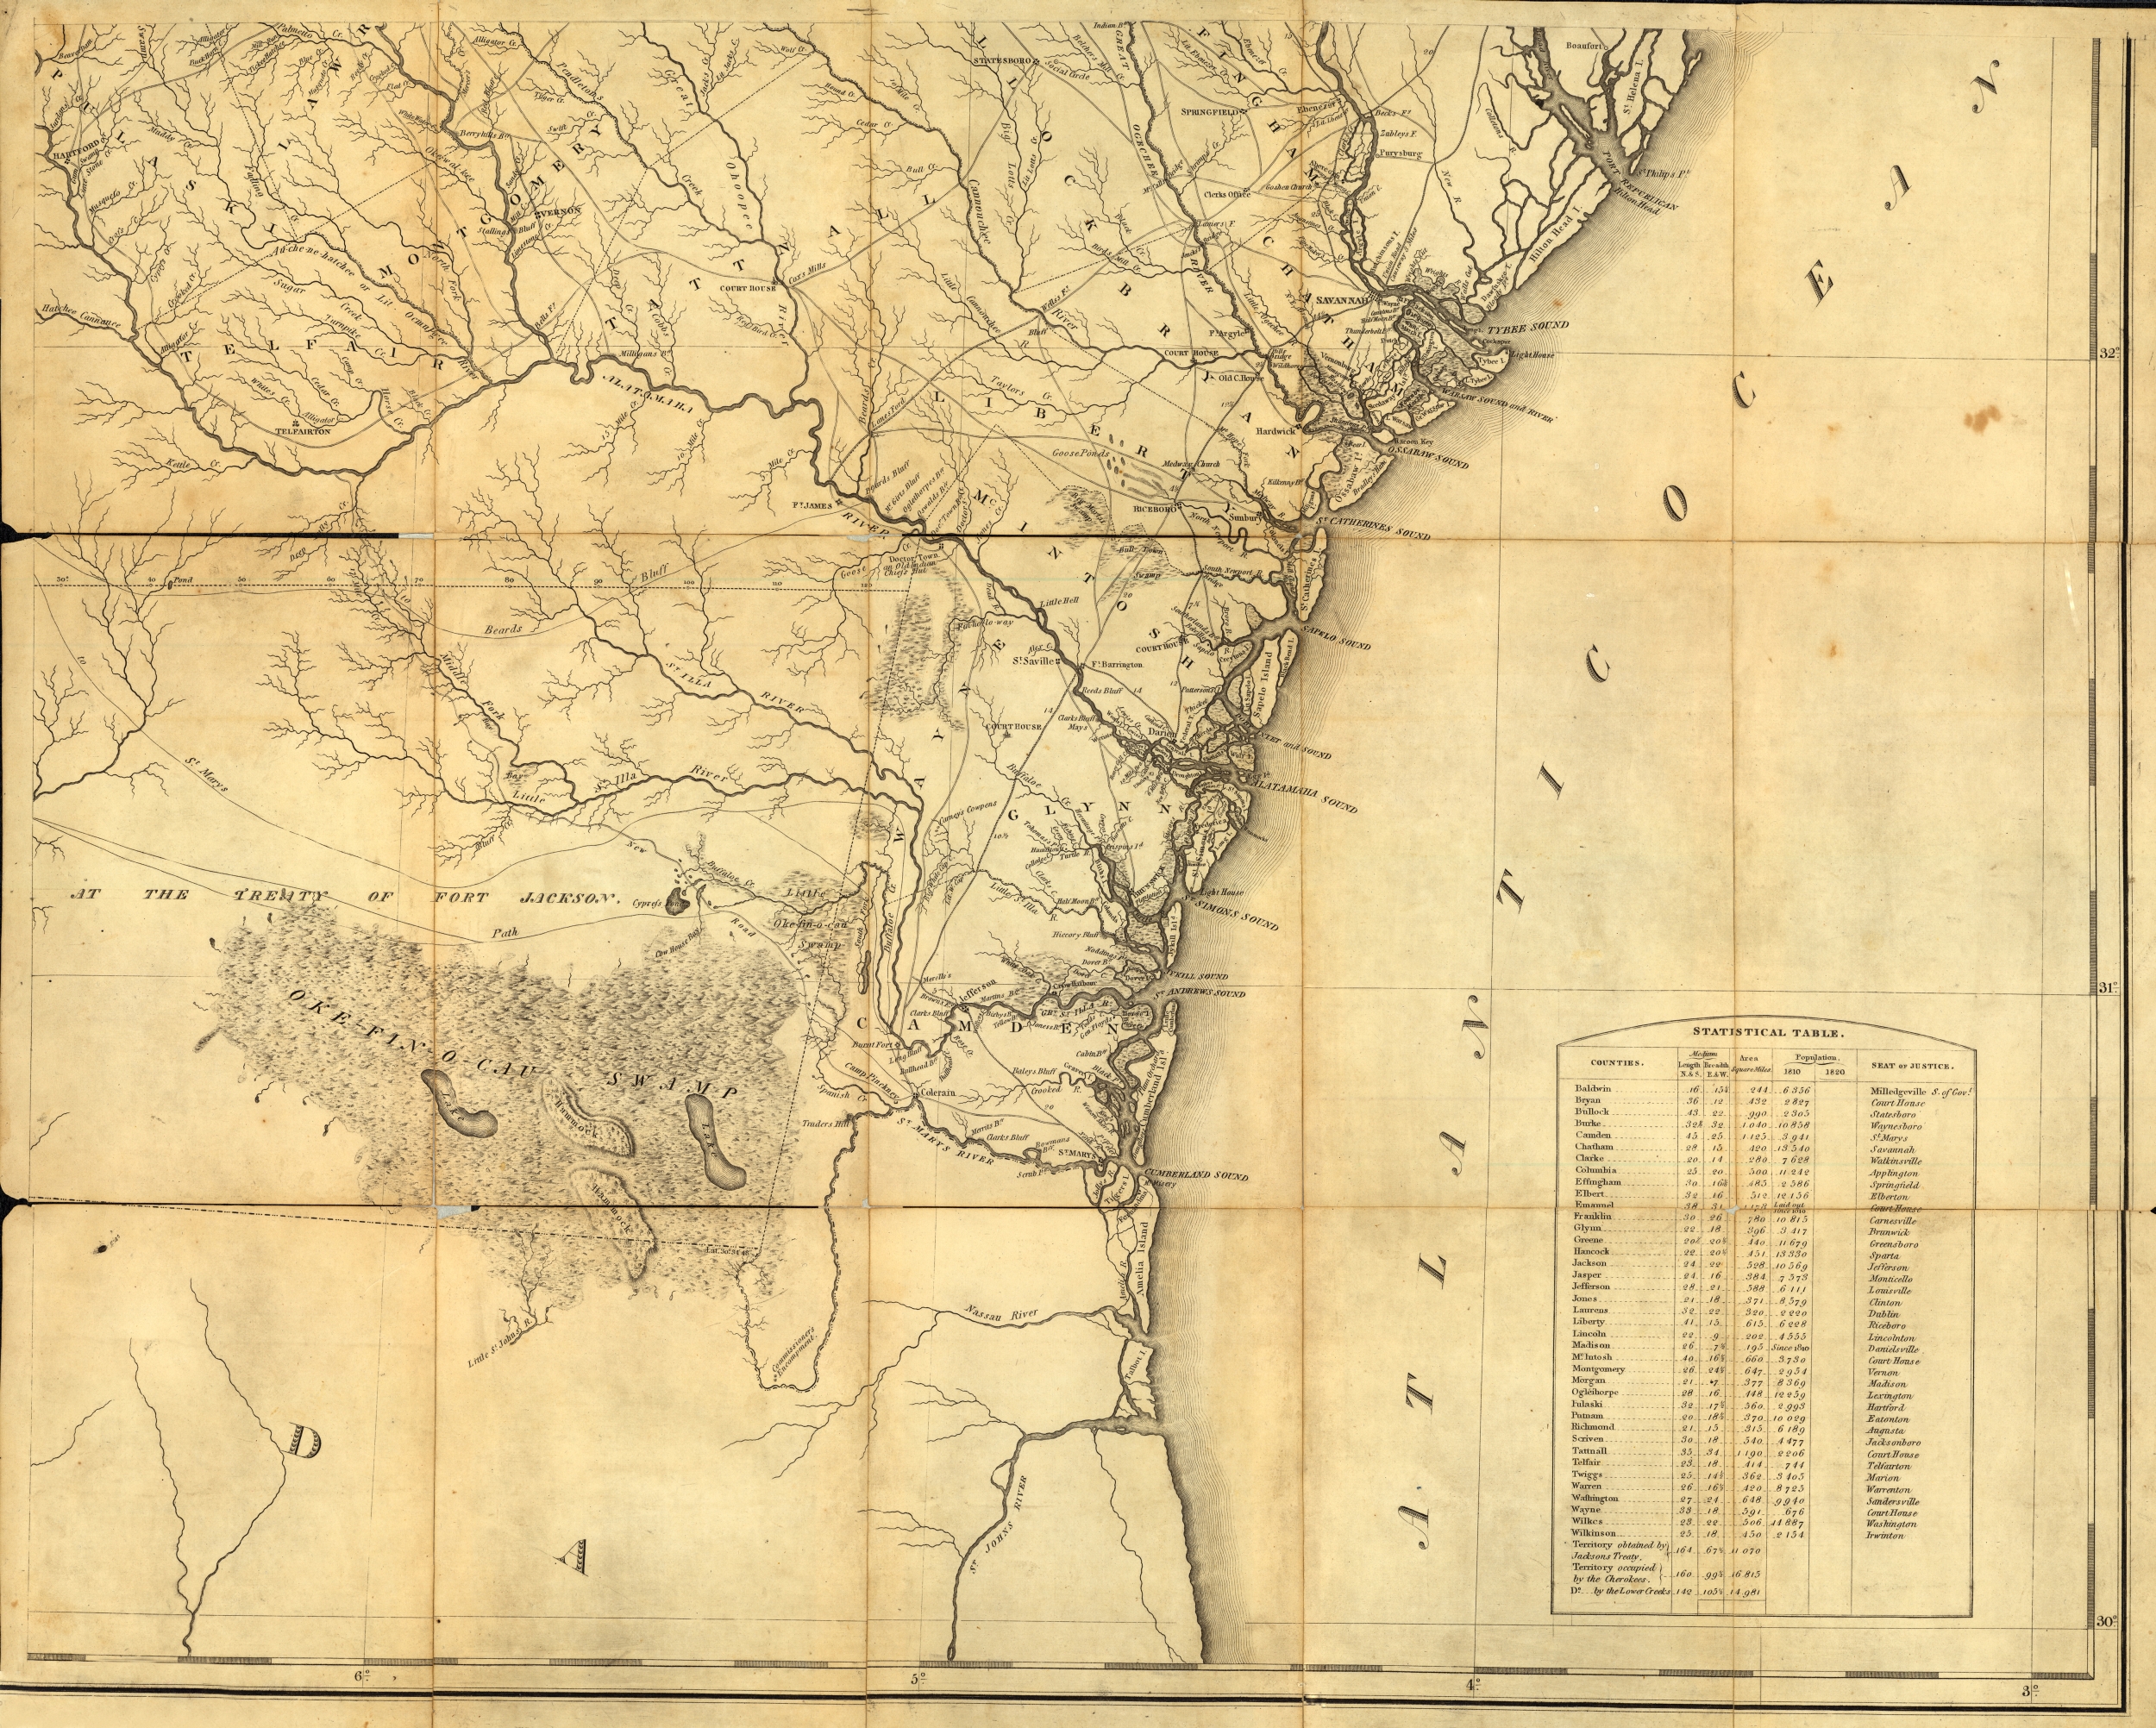 Atlantic Coast with Okefenokee Swamp, 1818